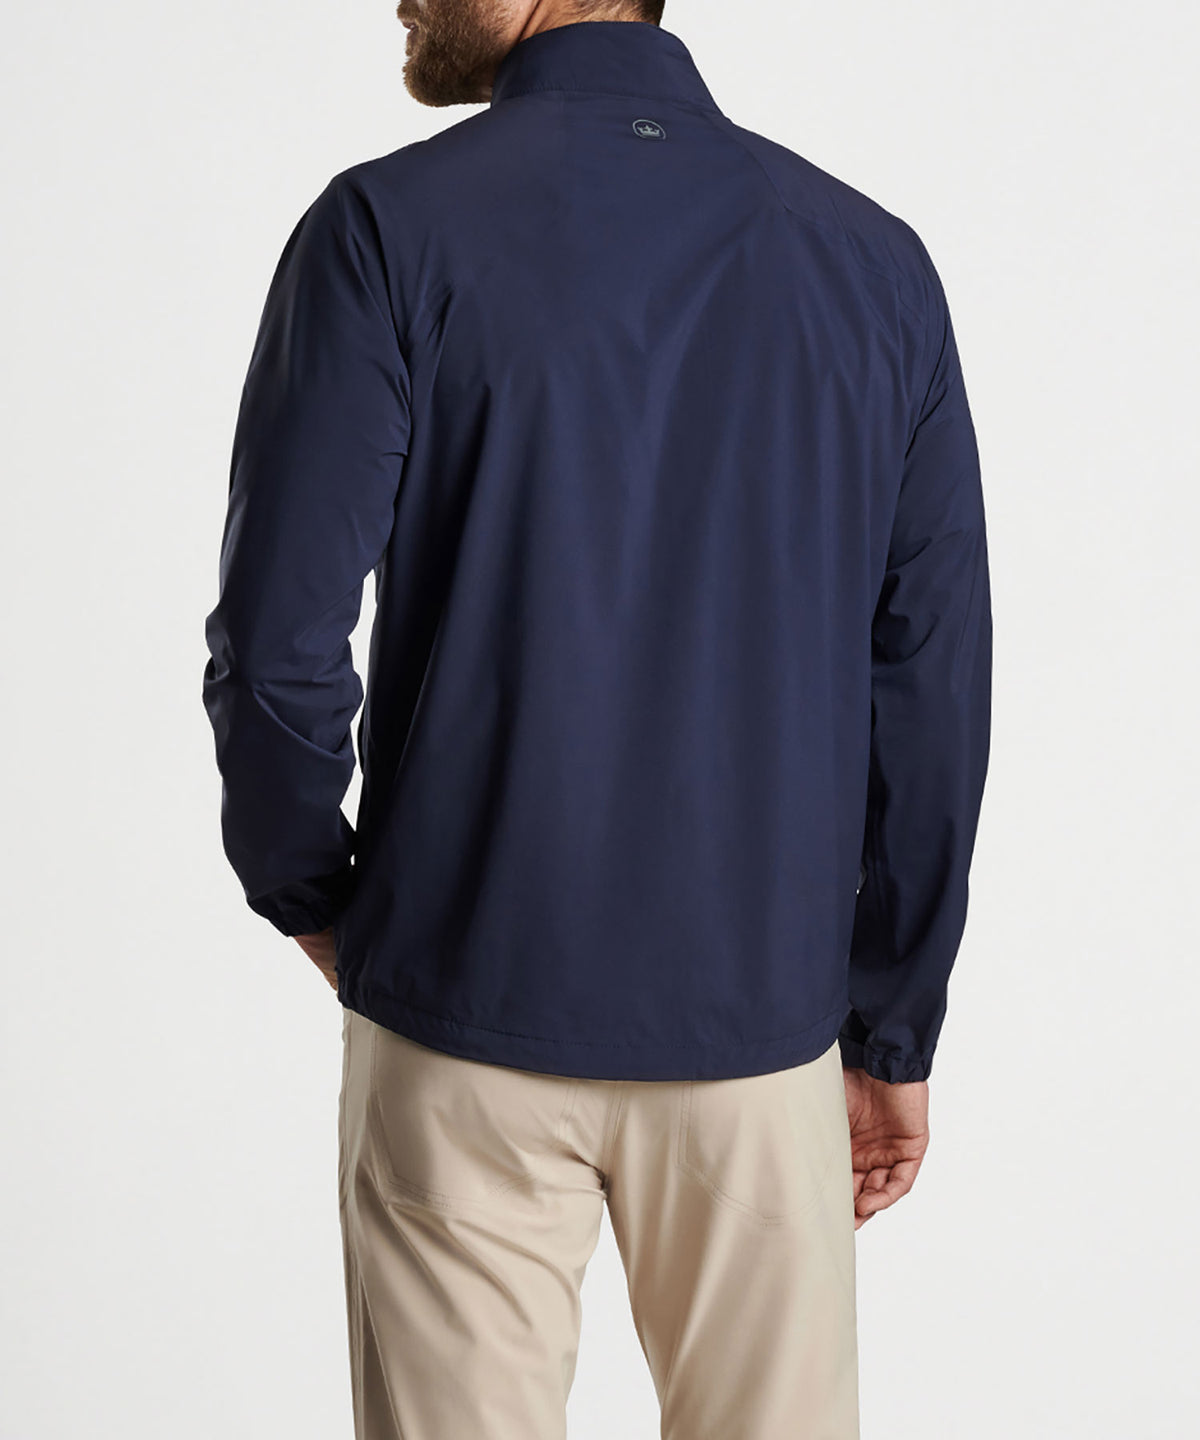 Peter Millar Shield Rain Shell Half-Zip Pullover, Men's Big & Tall